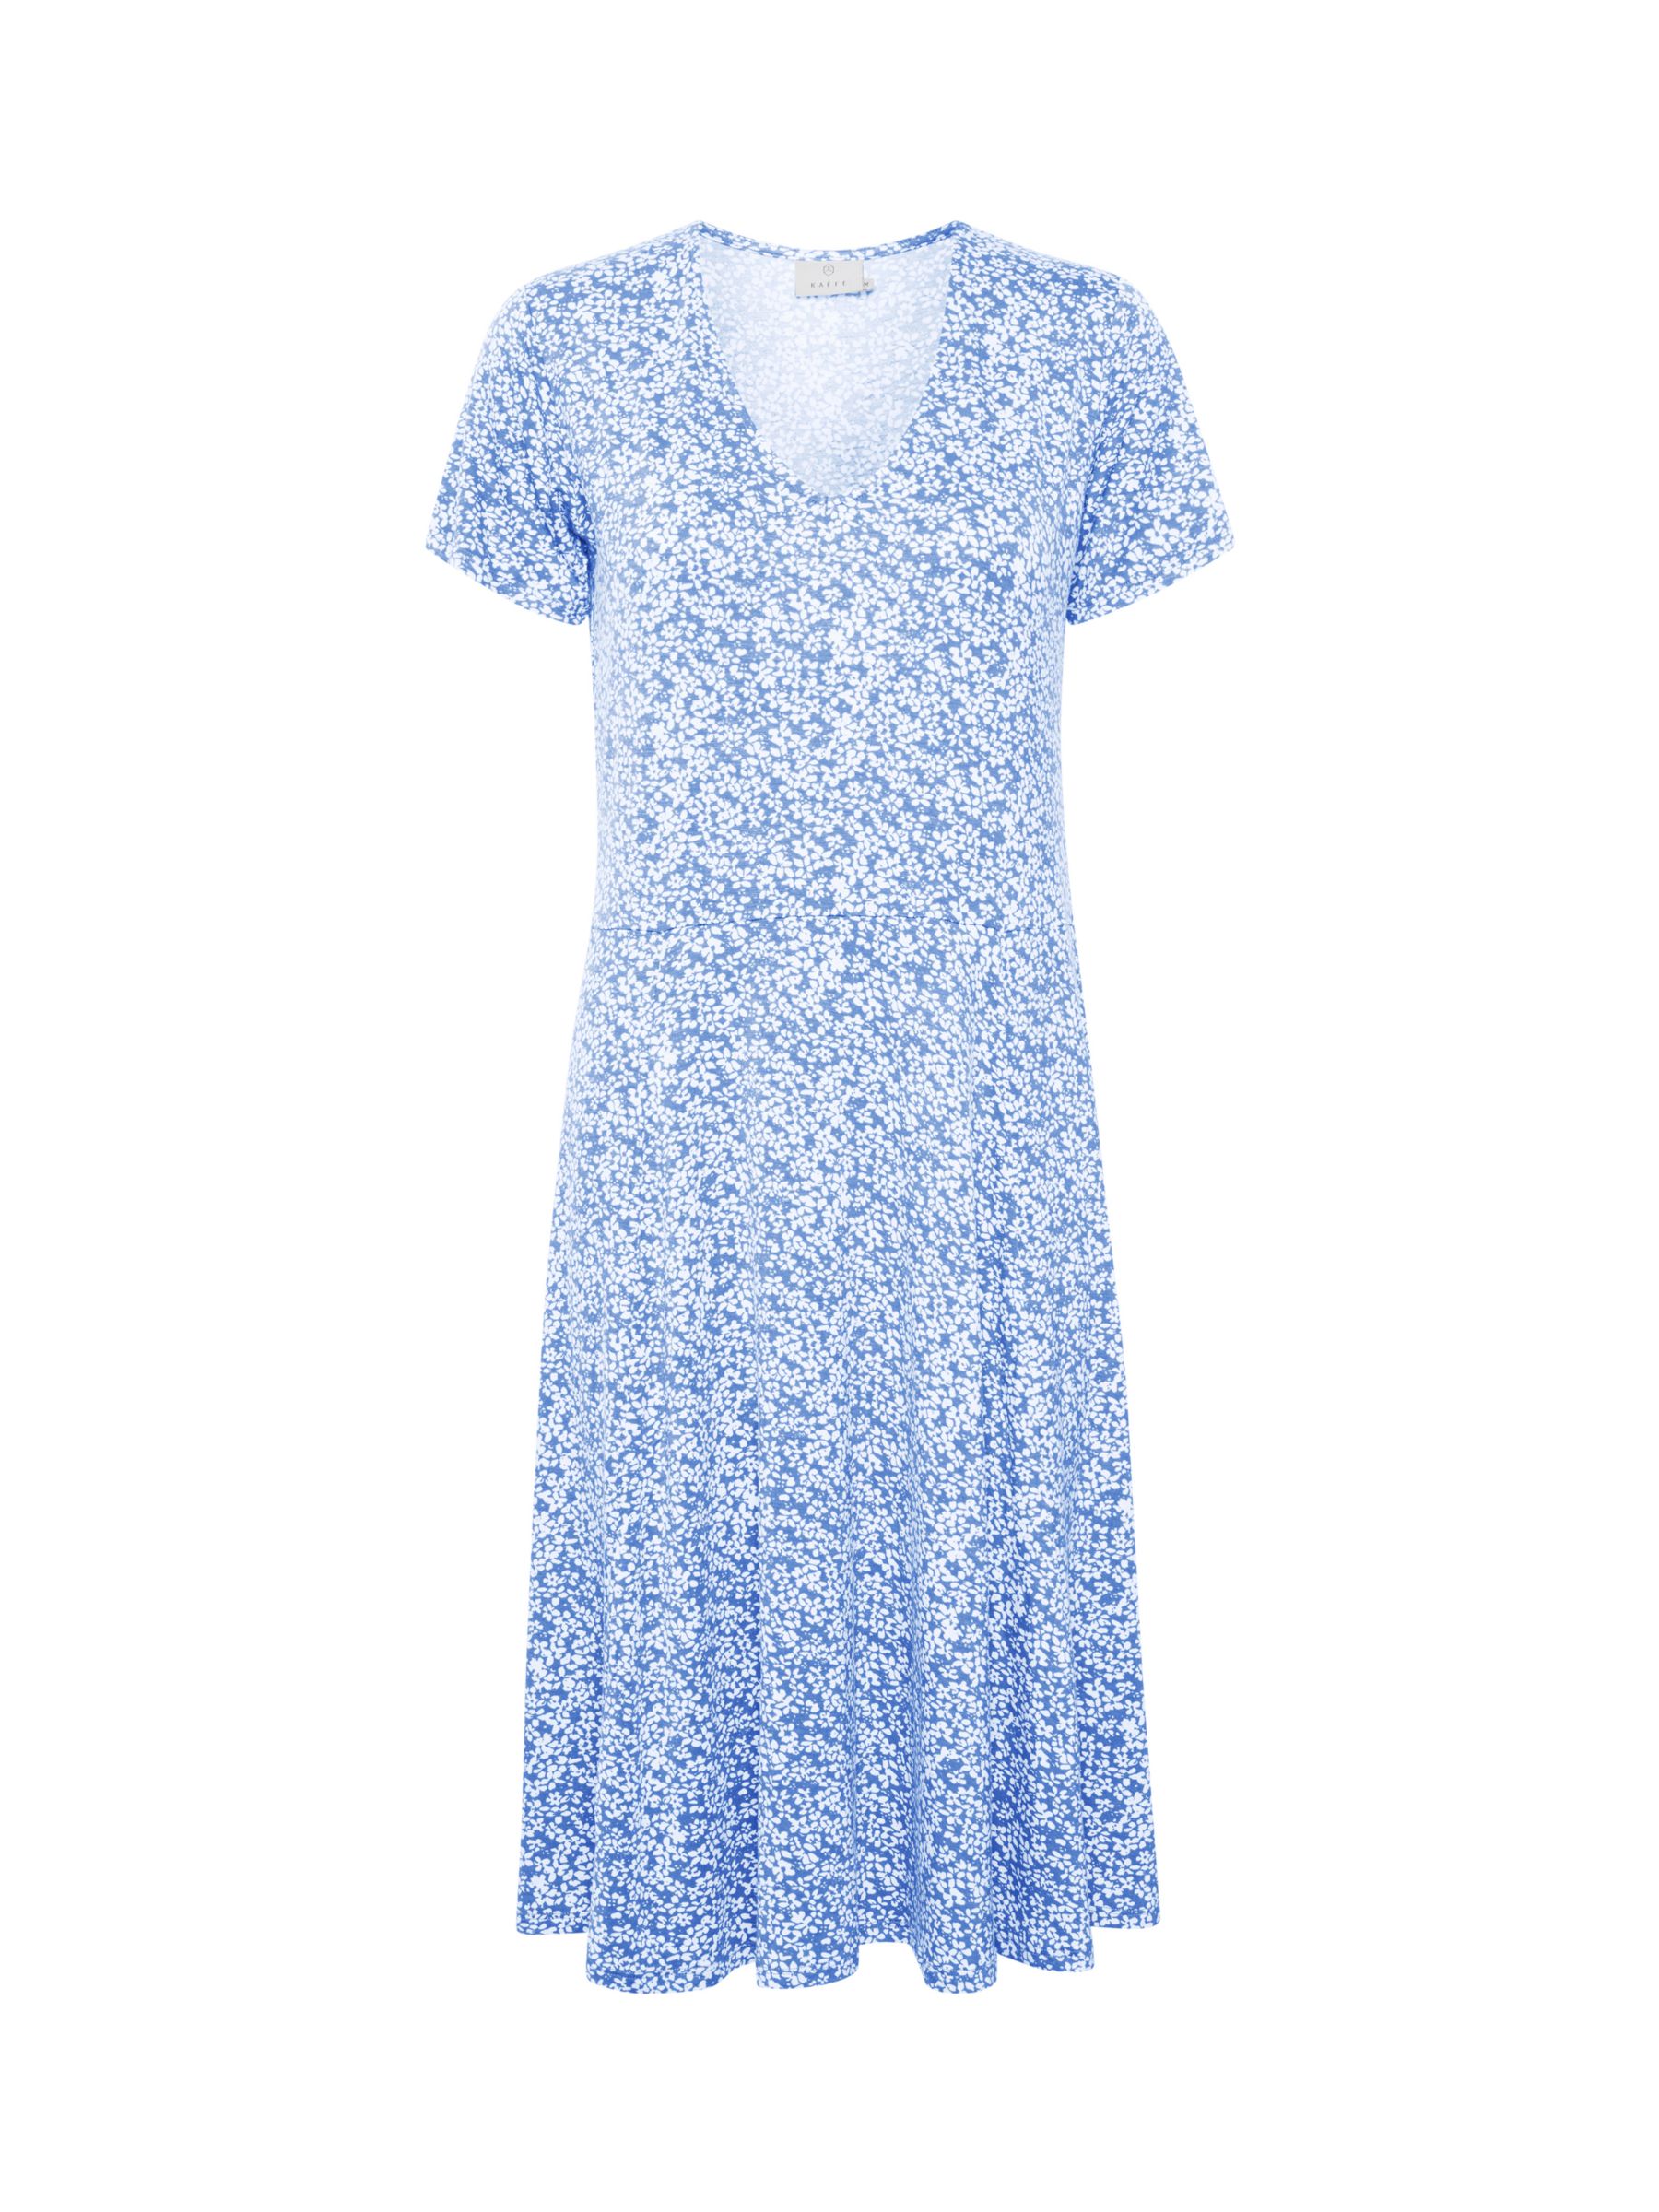 KAFFE Molly Floral Jersey Midi Dress, Pale Blue/White, XS